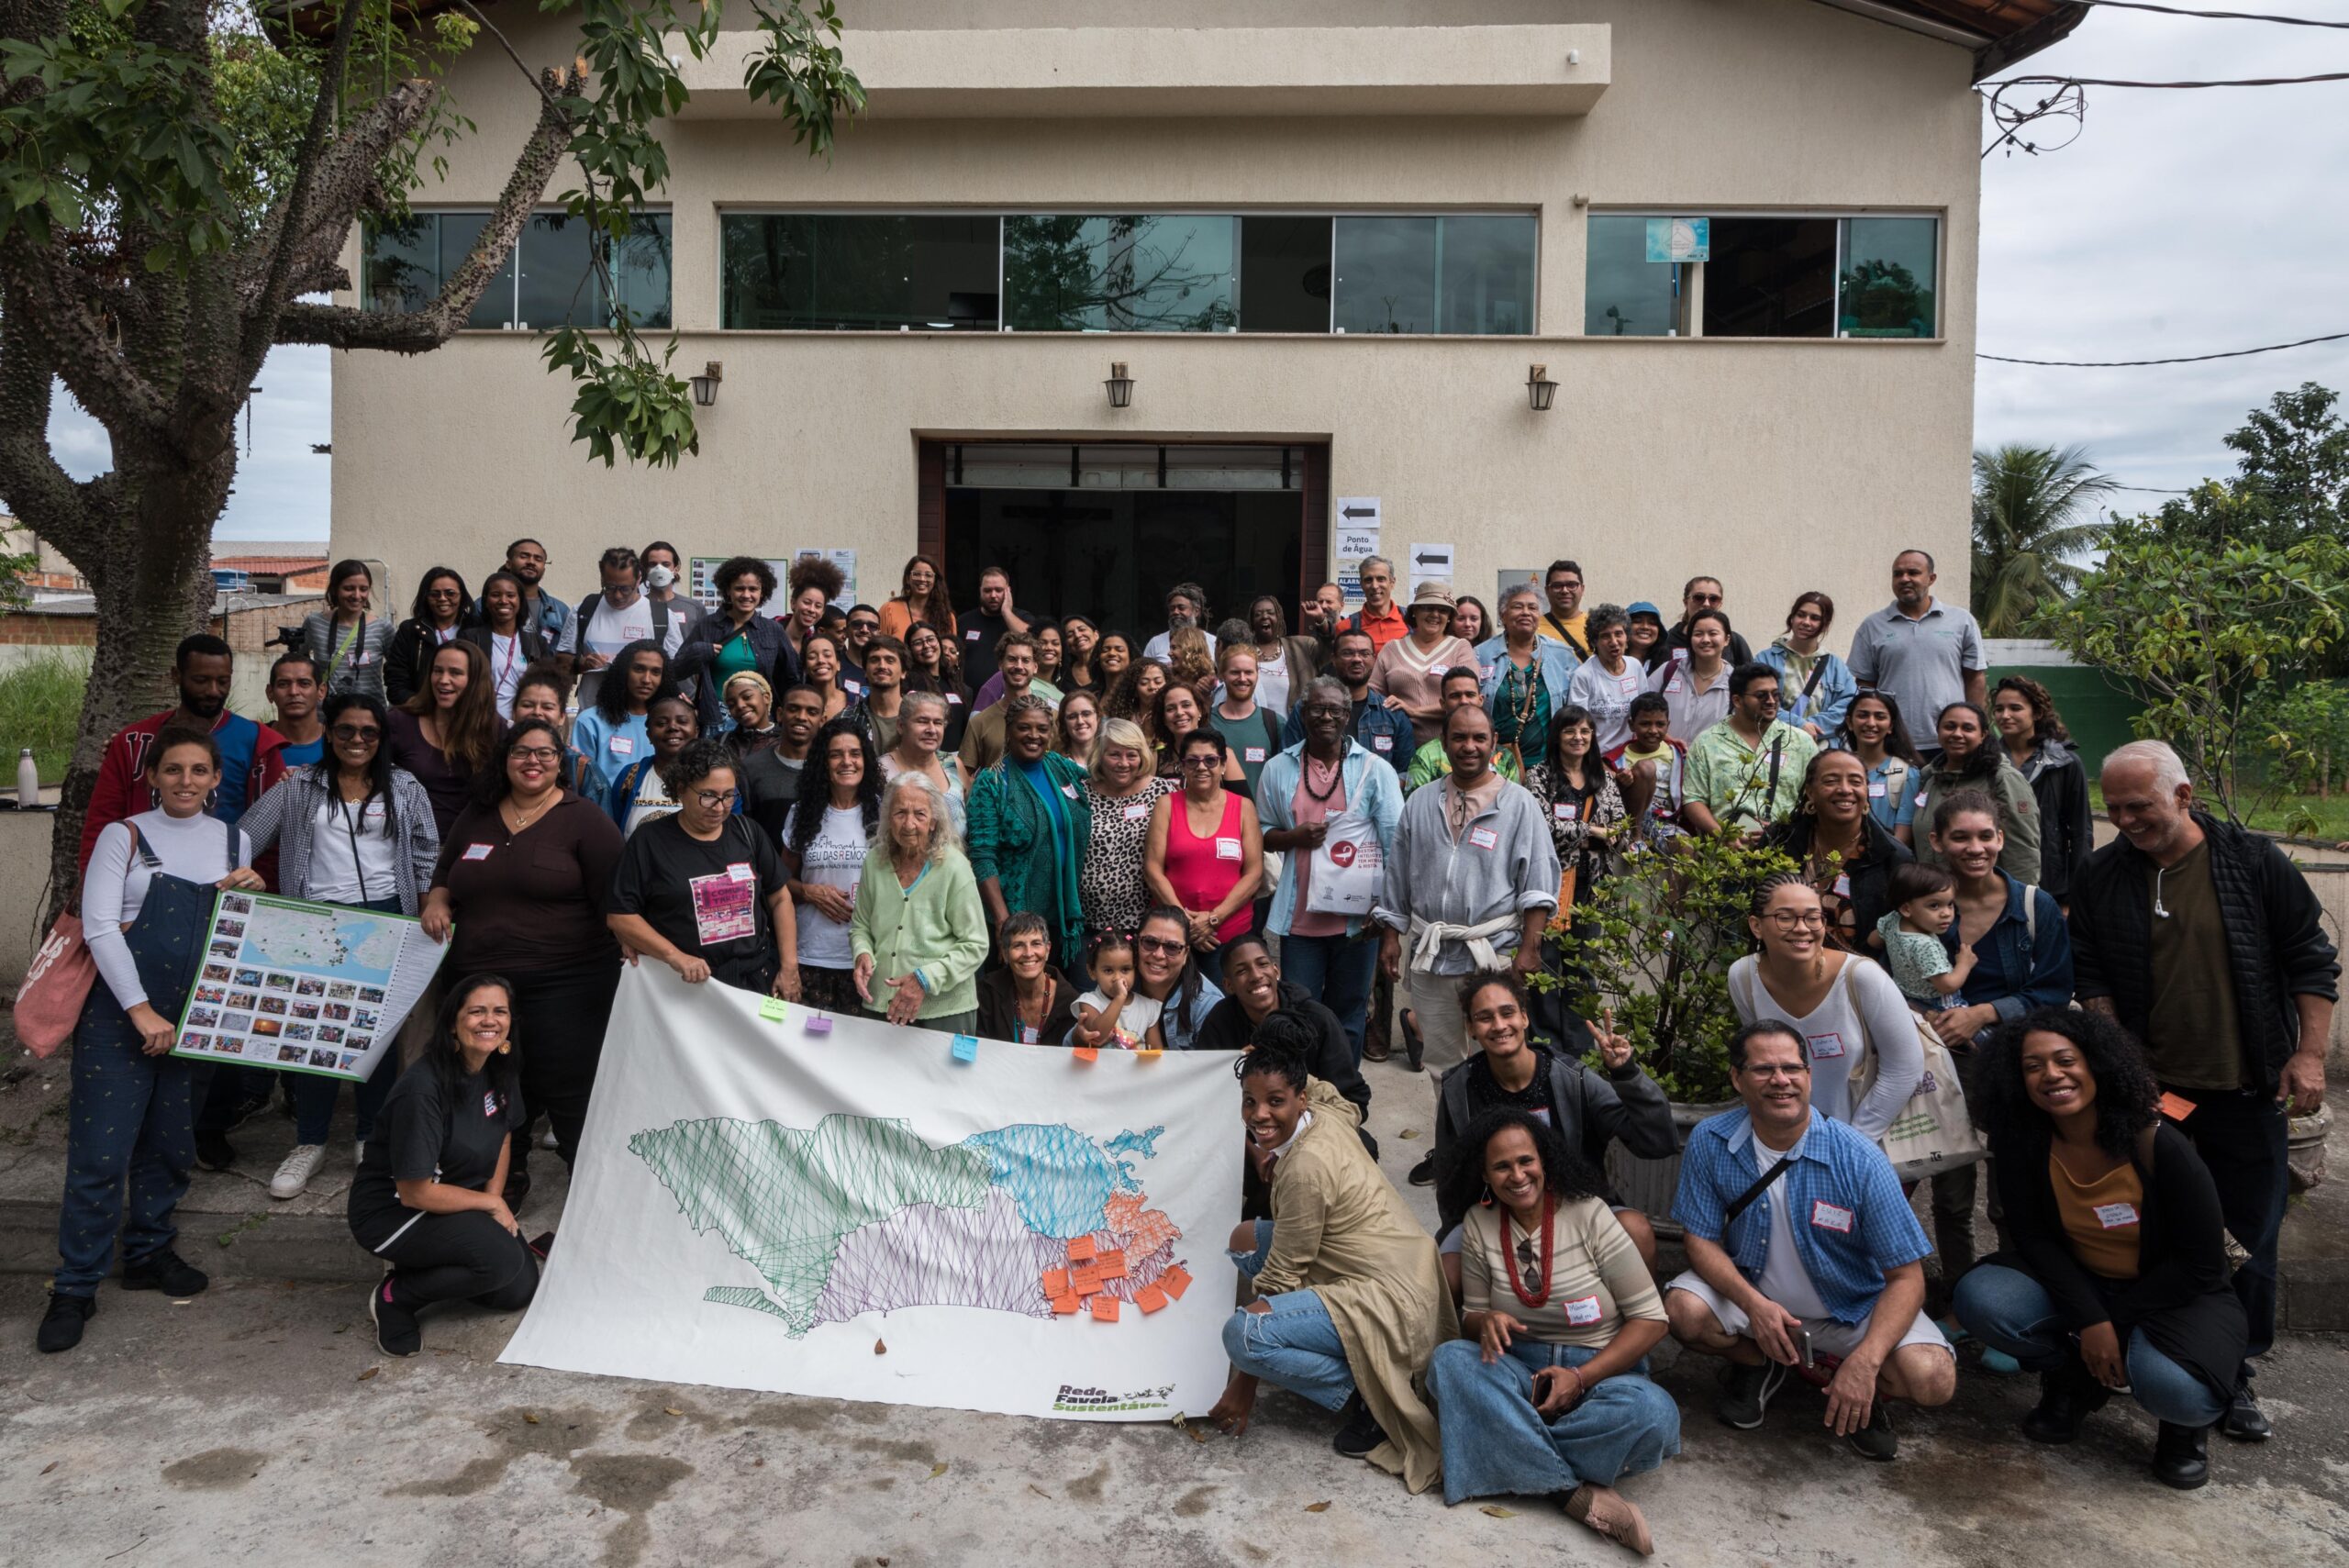 Click final com todos os participantes do lançamento da Exposição de Memória Climática das Favelas, em frente a Igreja de São José Operário na Vila Autódromo. Foto: Bárbara Dias